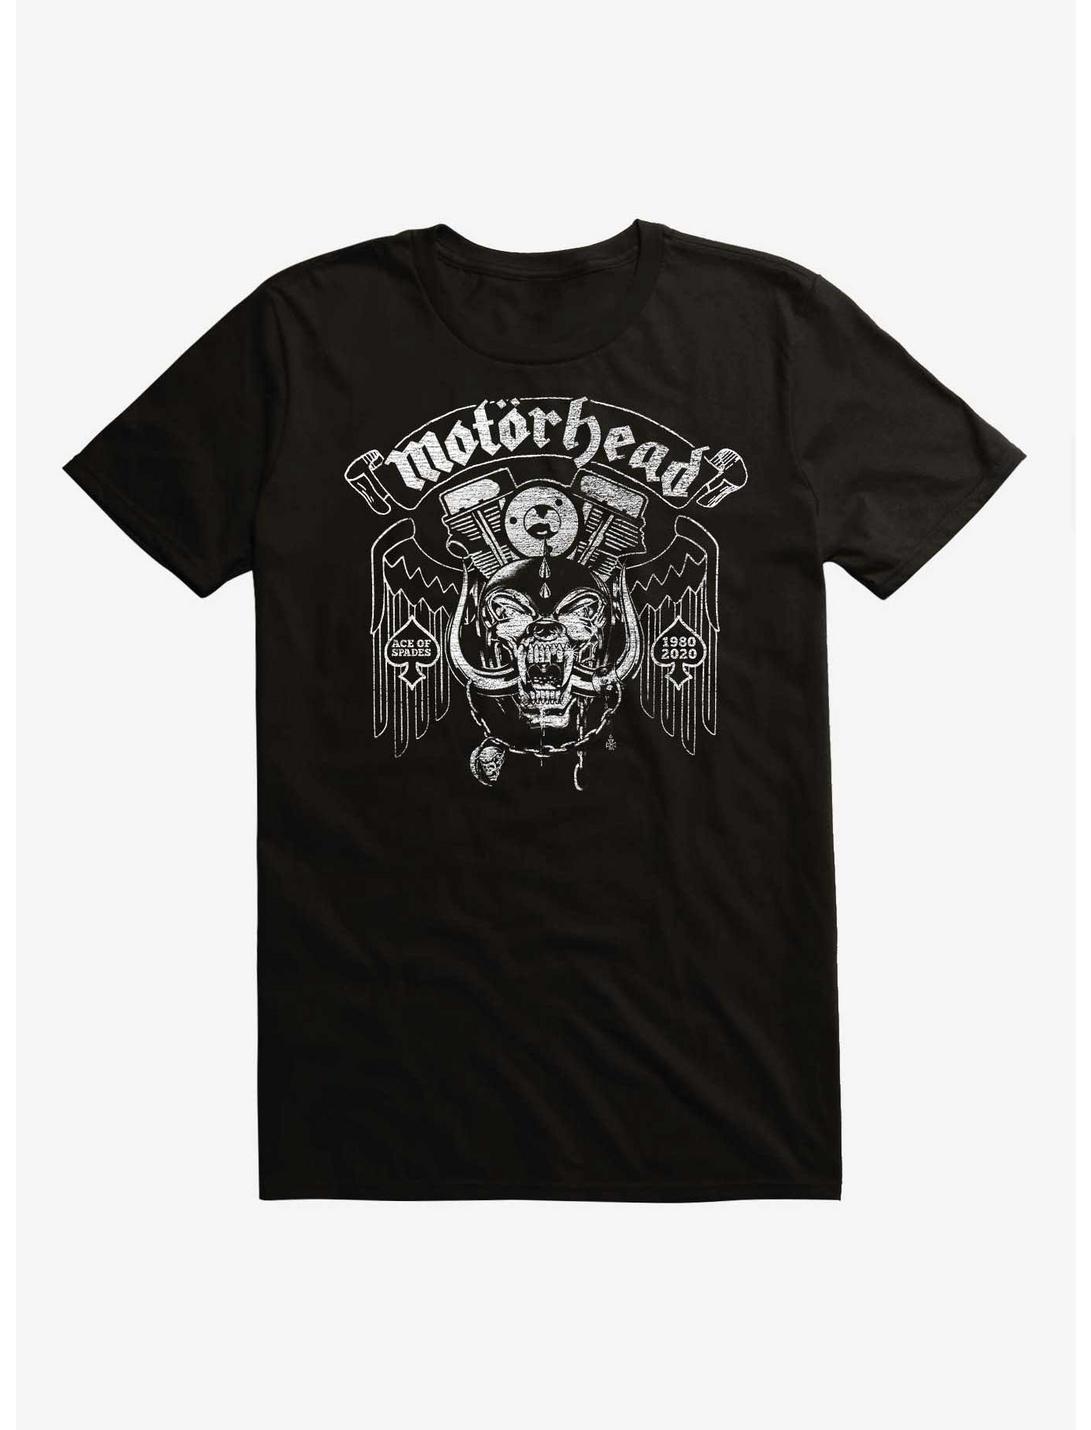 Motorhead Ace Of Spades Est. 1980 T-Shirt, BLACK, hi-res